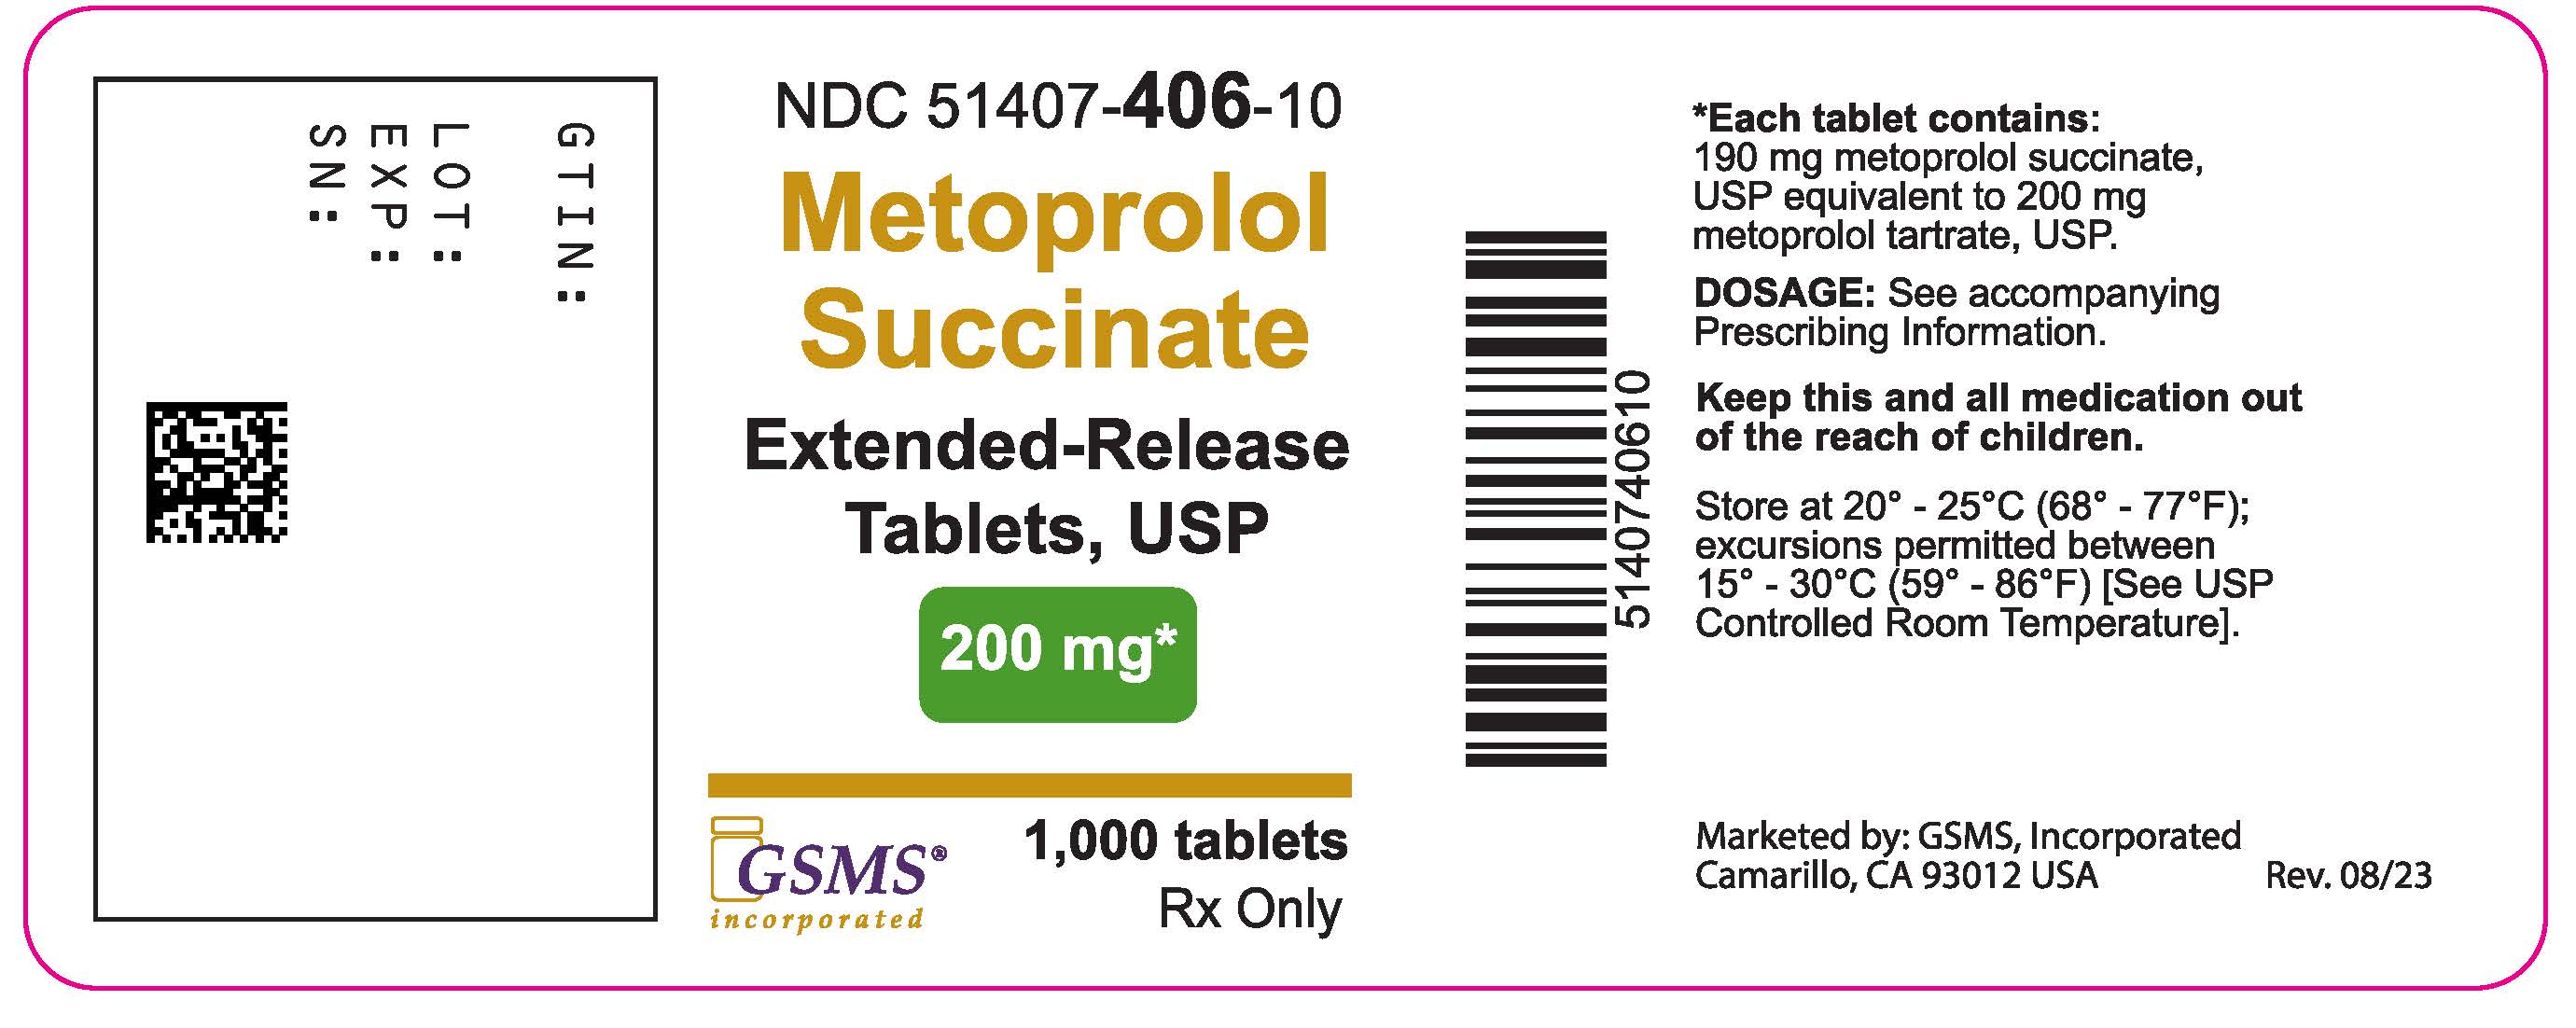 51407-406-10LB - Metoprolol Succinate ER - Ingenus - Rev. 0823.jpg